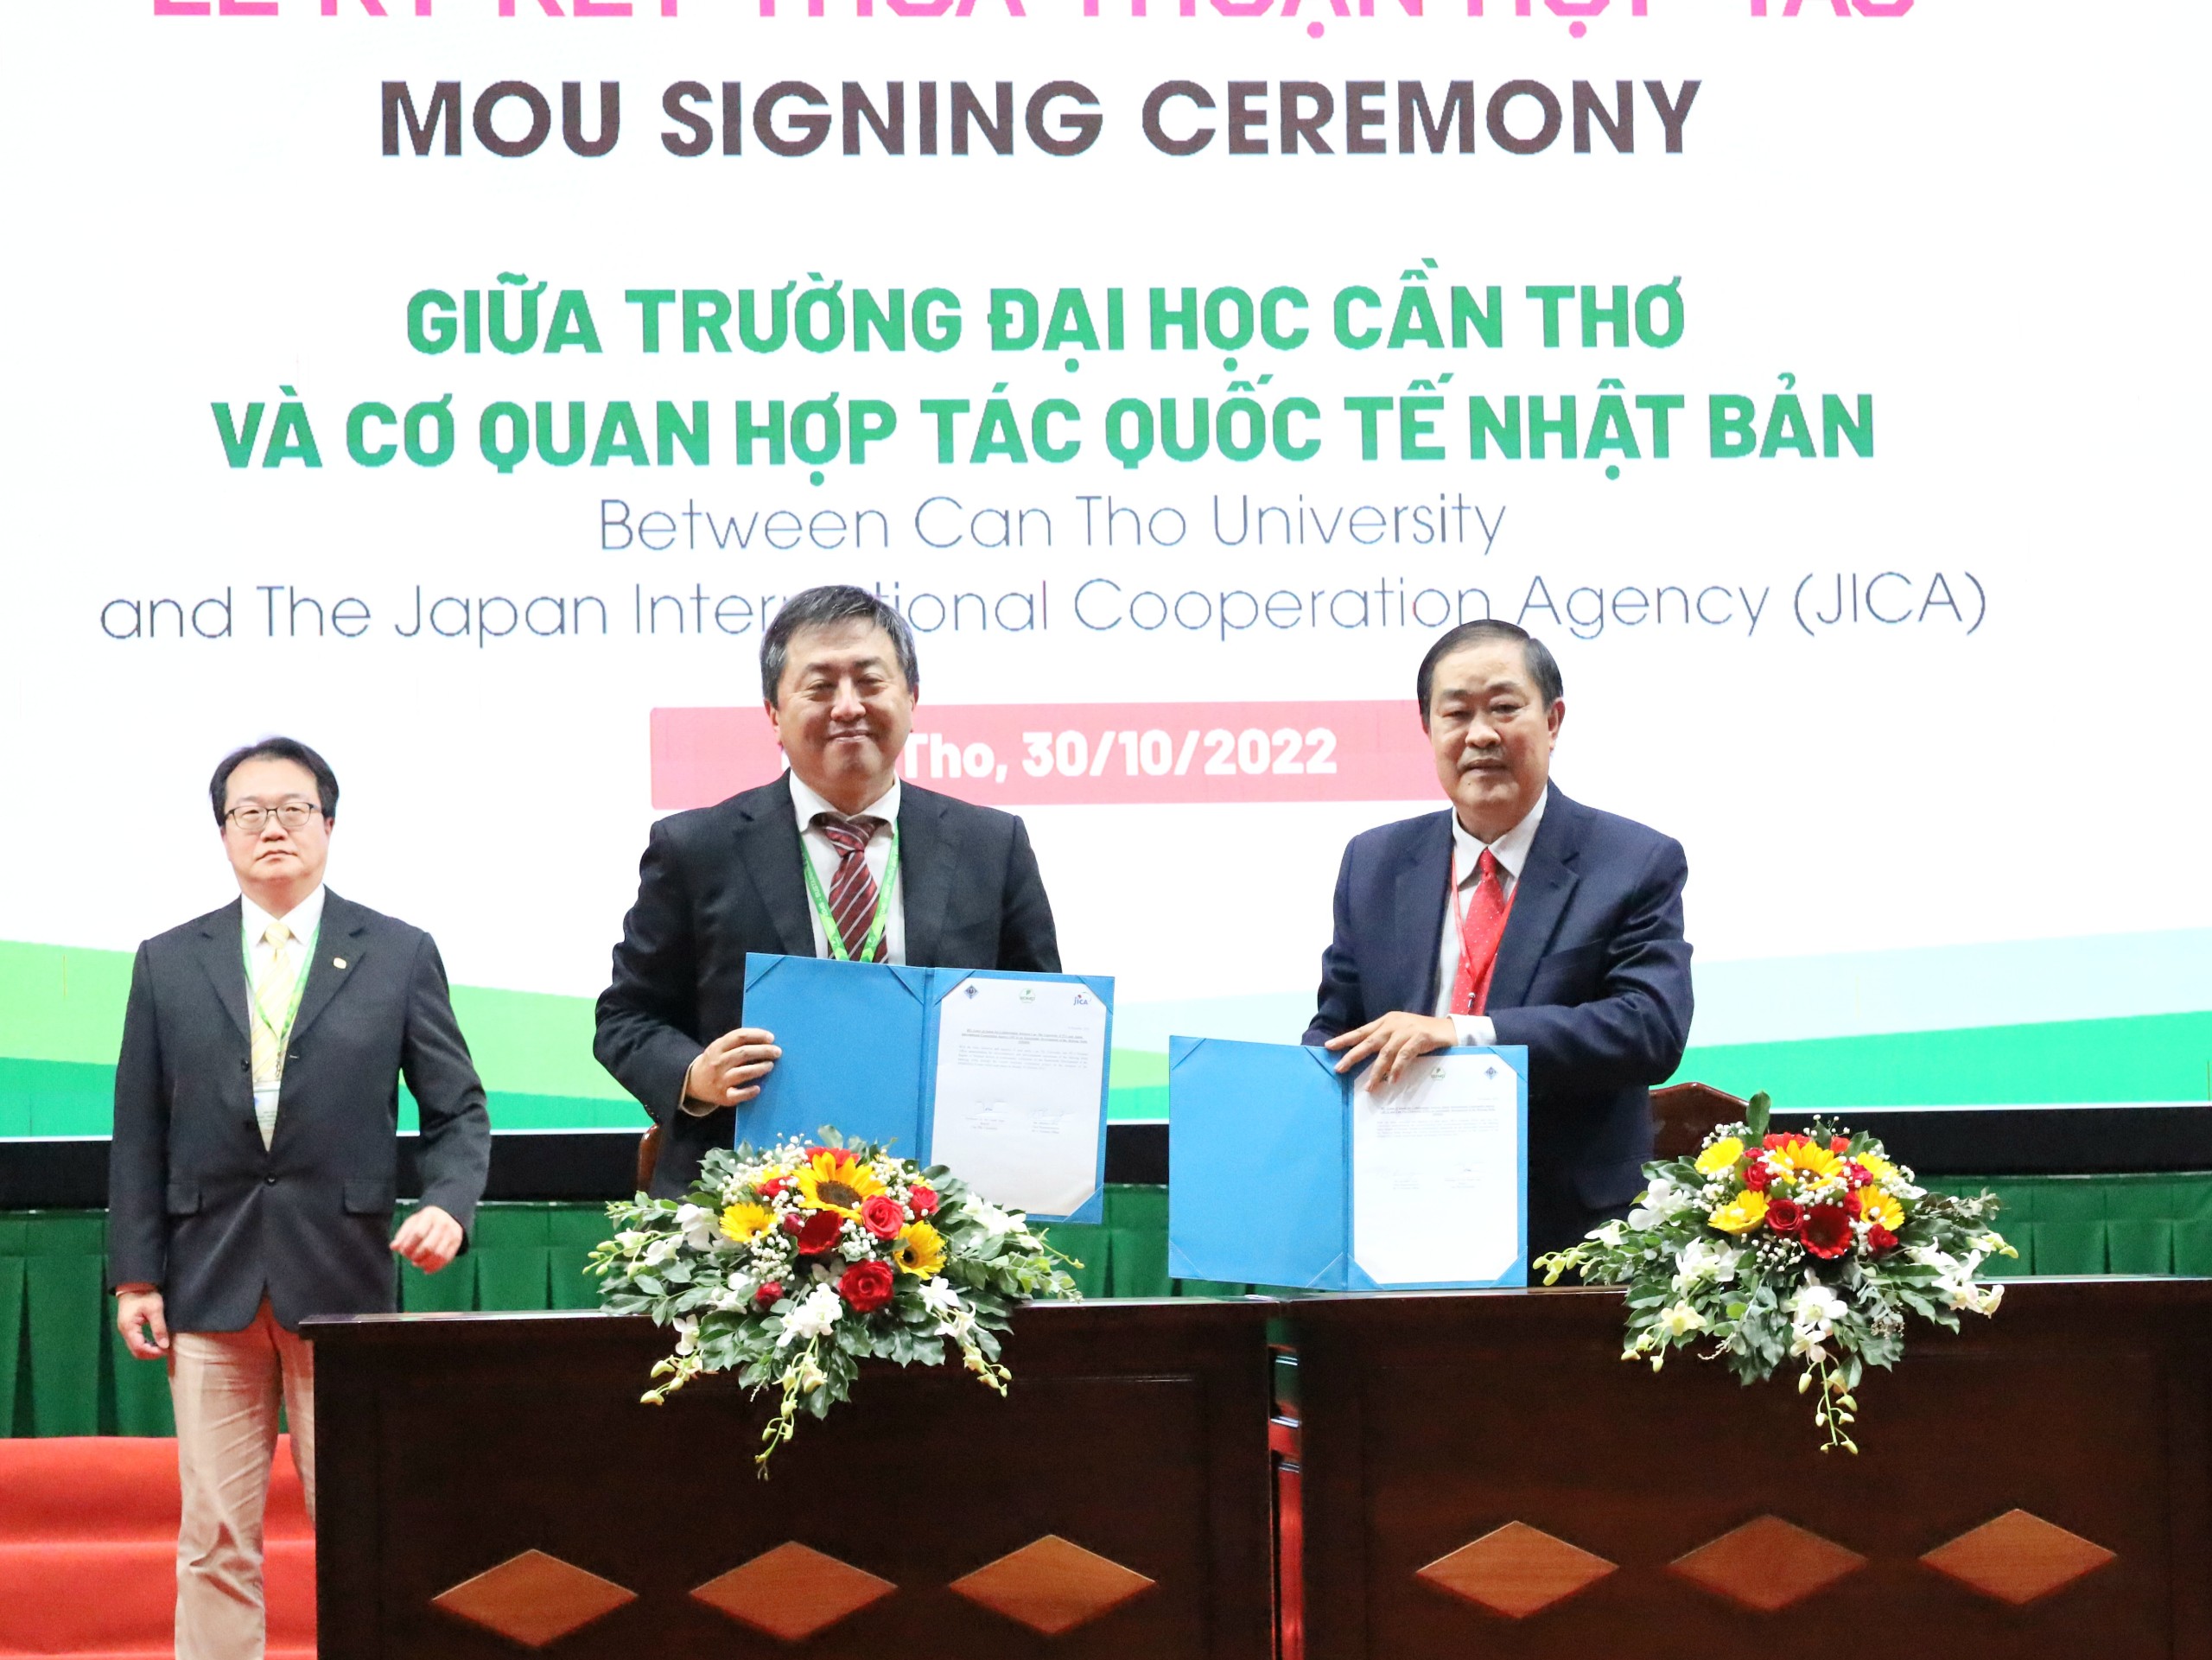 Ký kết thỏa thuận hợp tác giữa Trường Đại học Cần Thơ và Cơ quan Hợp tác quốc tế Nhật Bản - JICA.